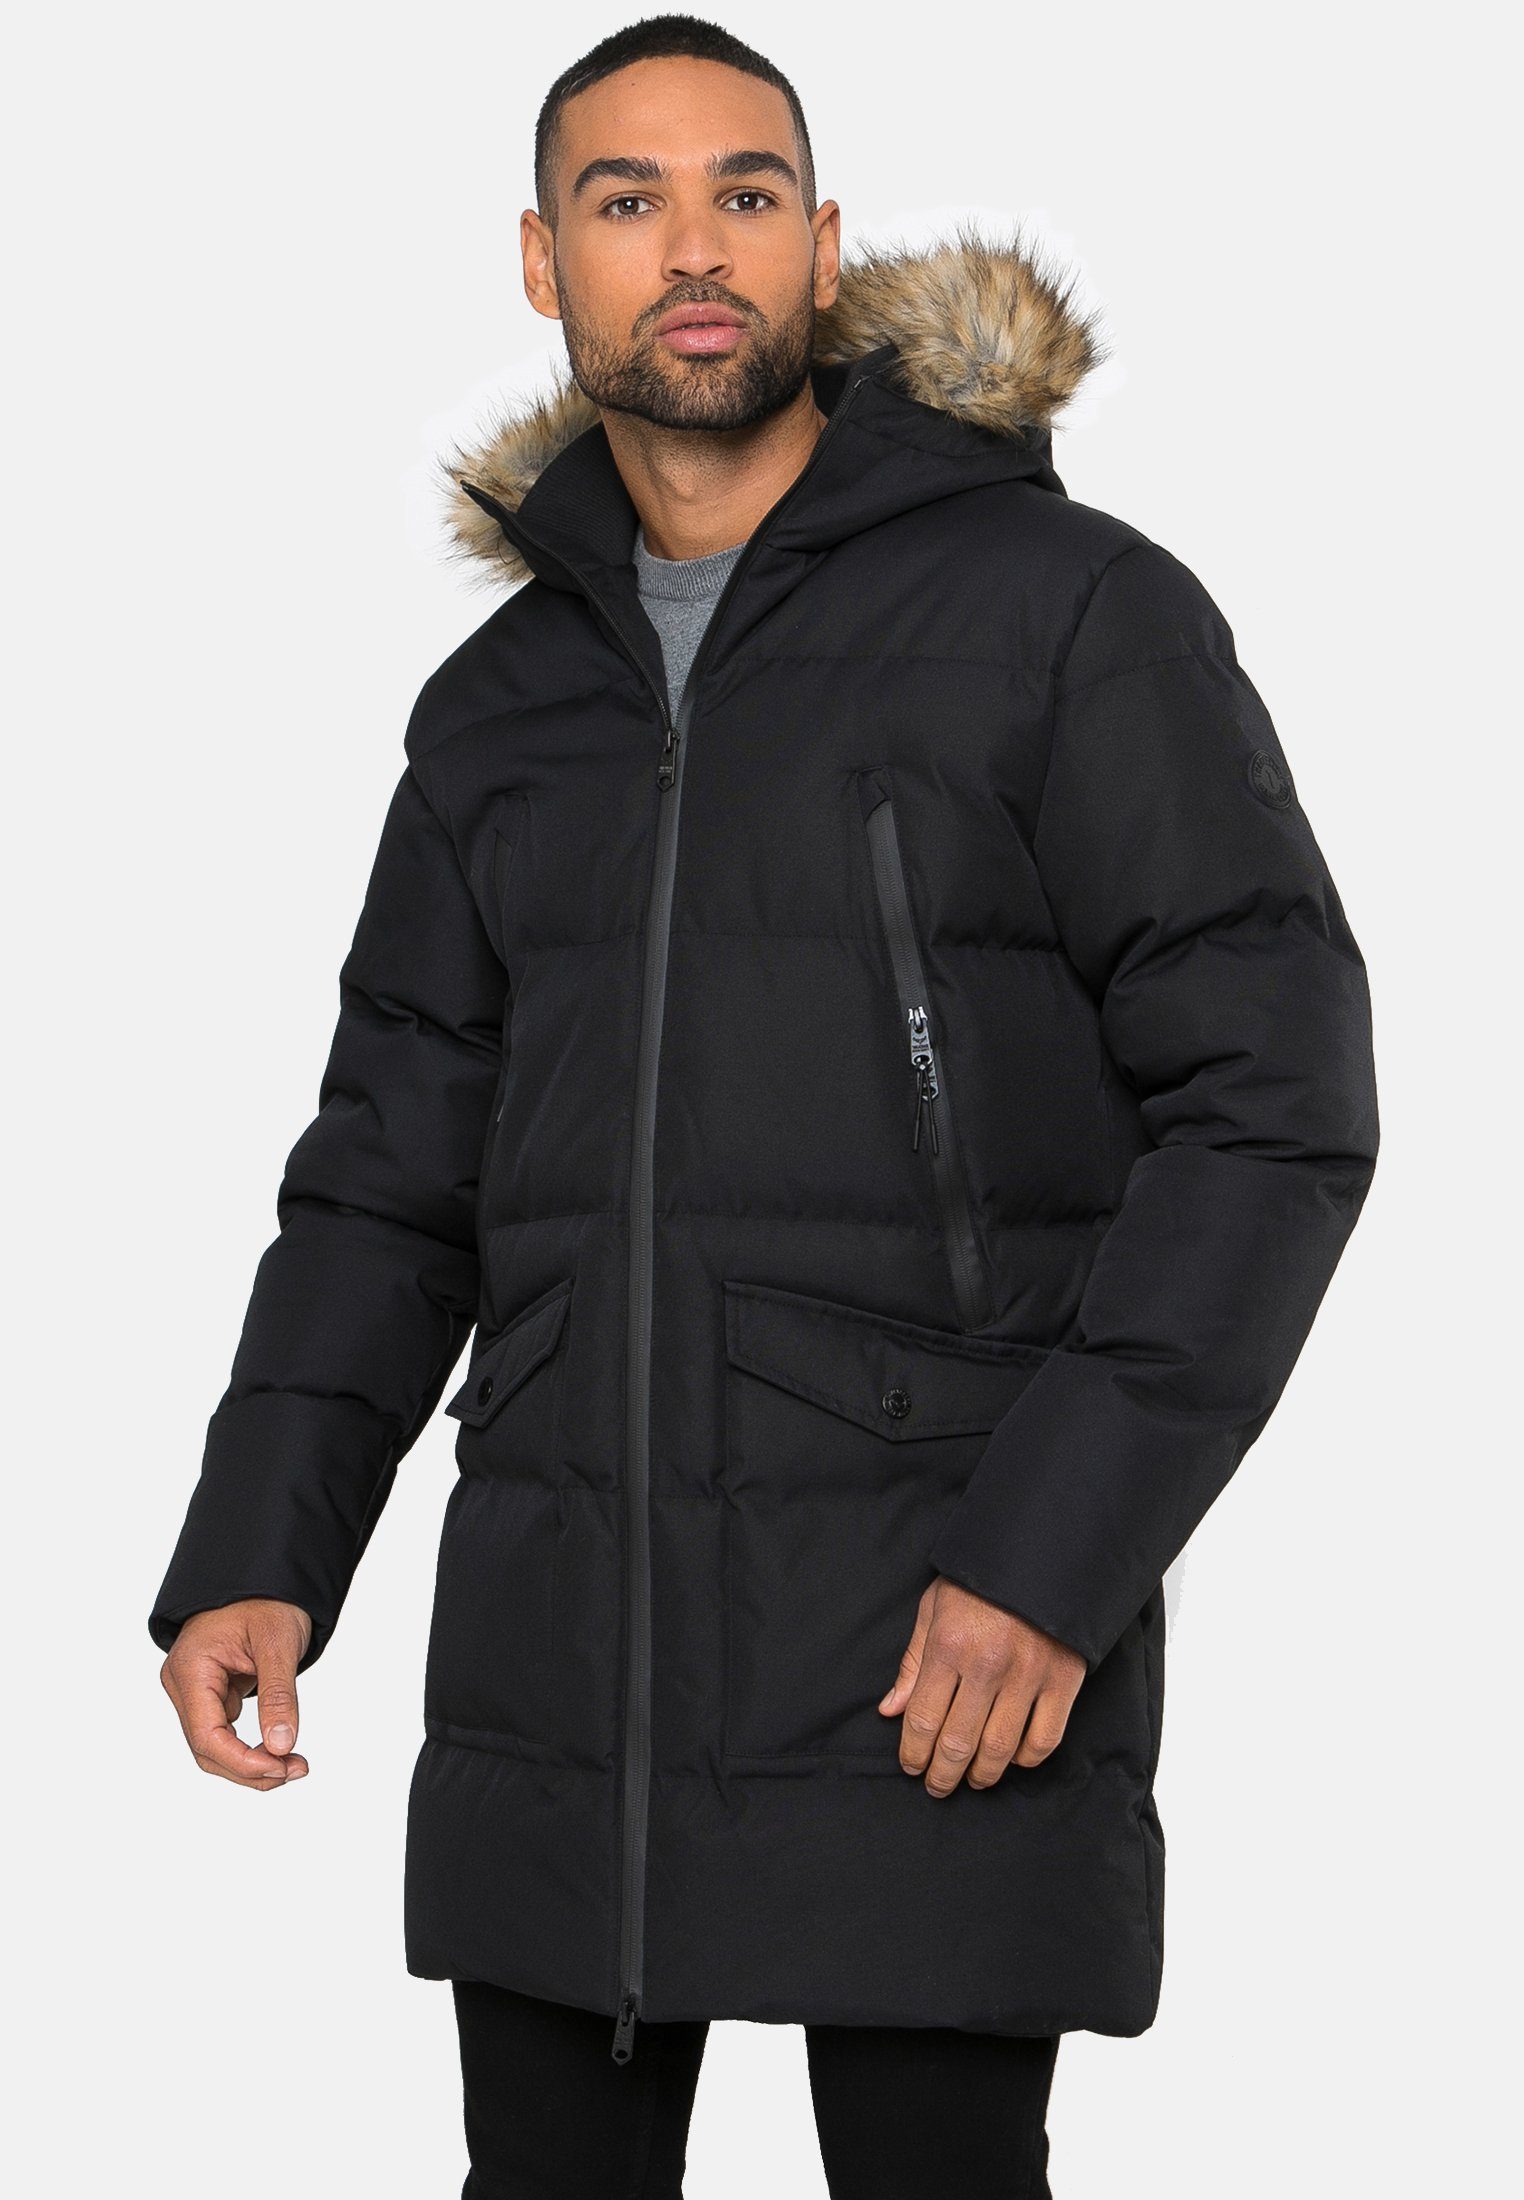 Recycled Threadbare schwarz (GRS) Black- Renfield Padded Longline Winterjacke THB Jacket zertifiziert Standard Global